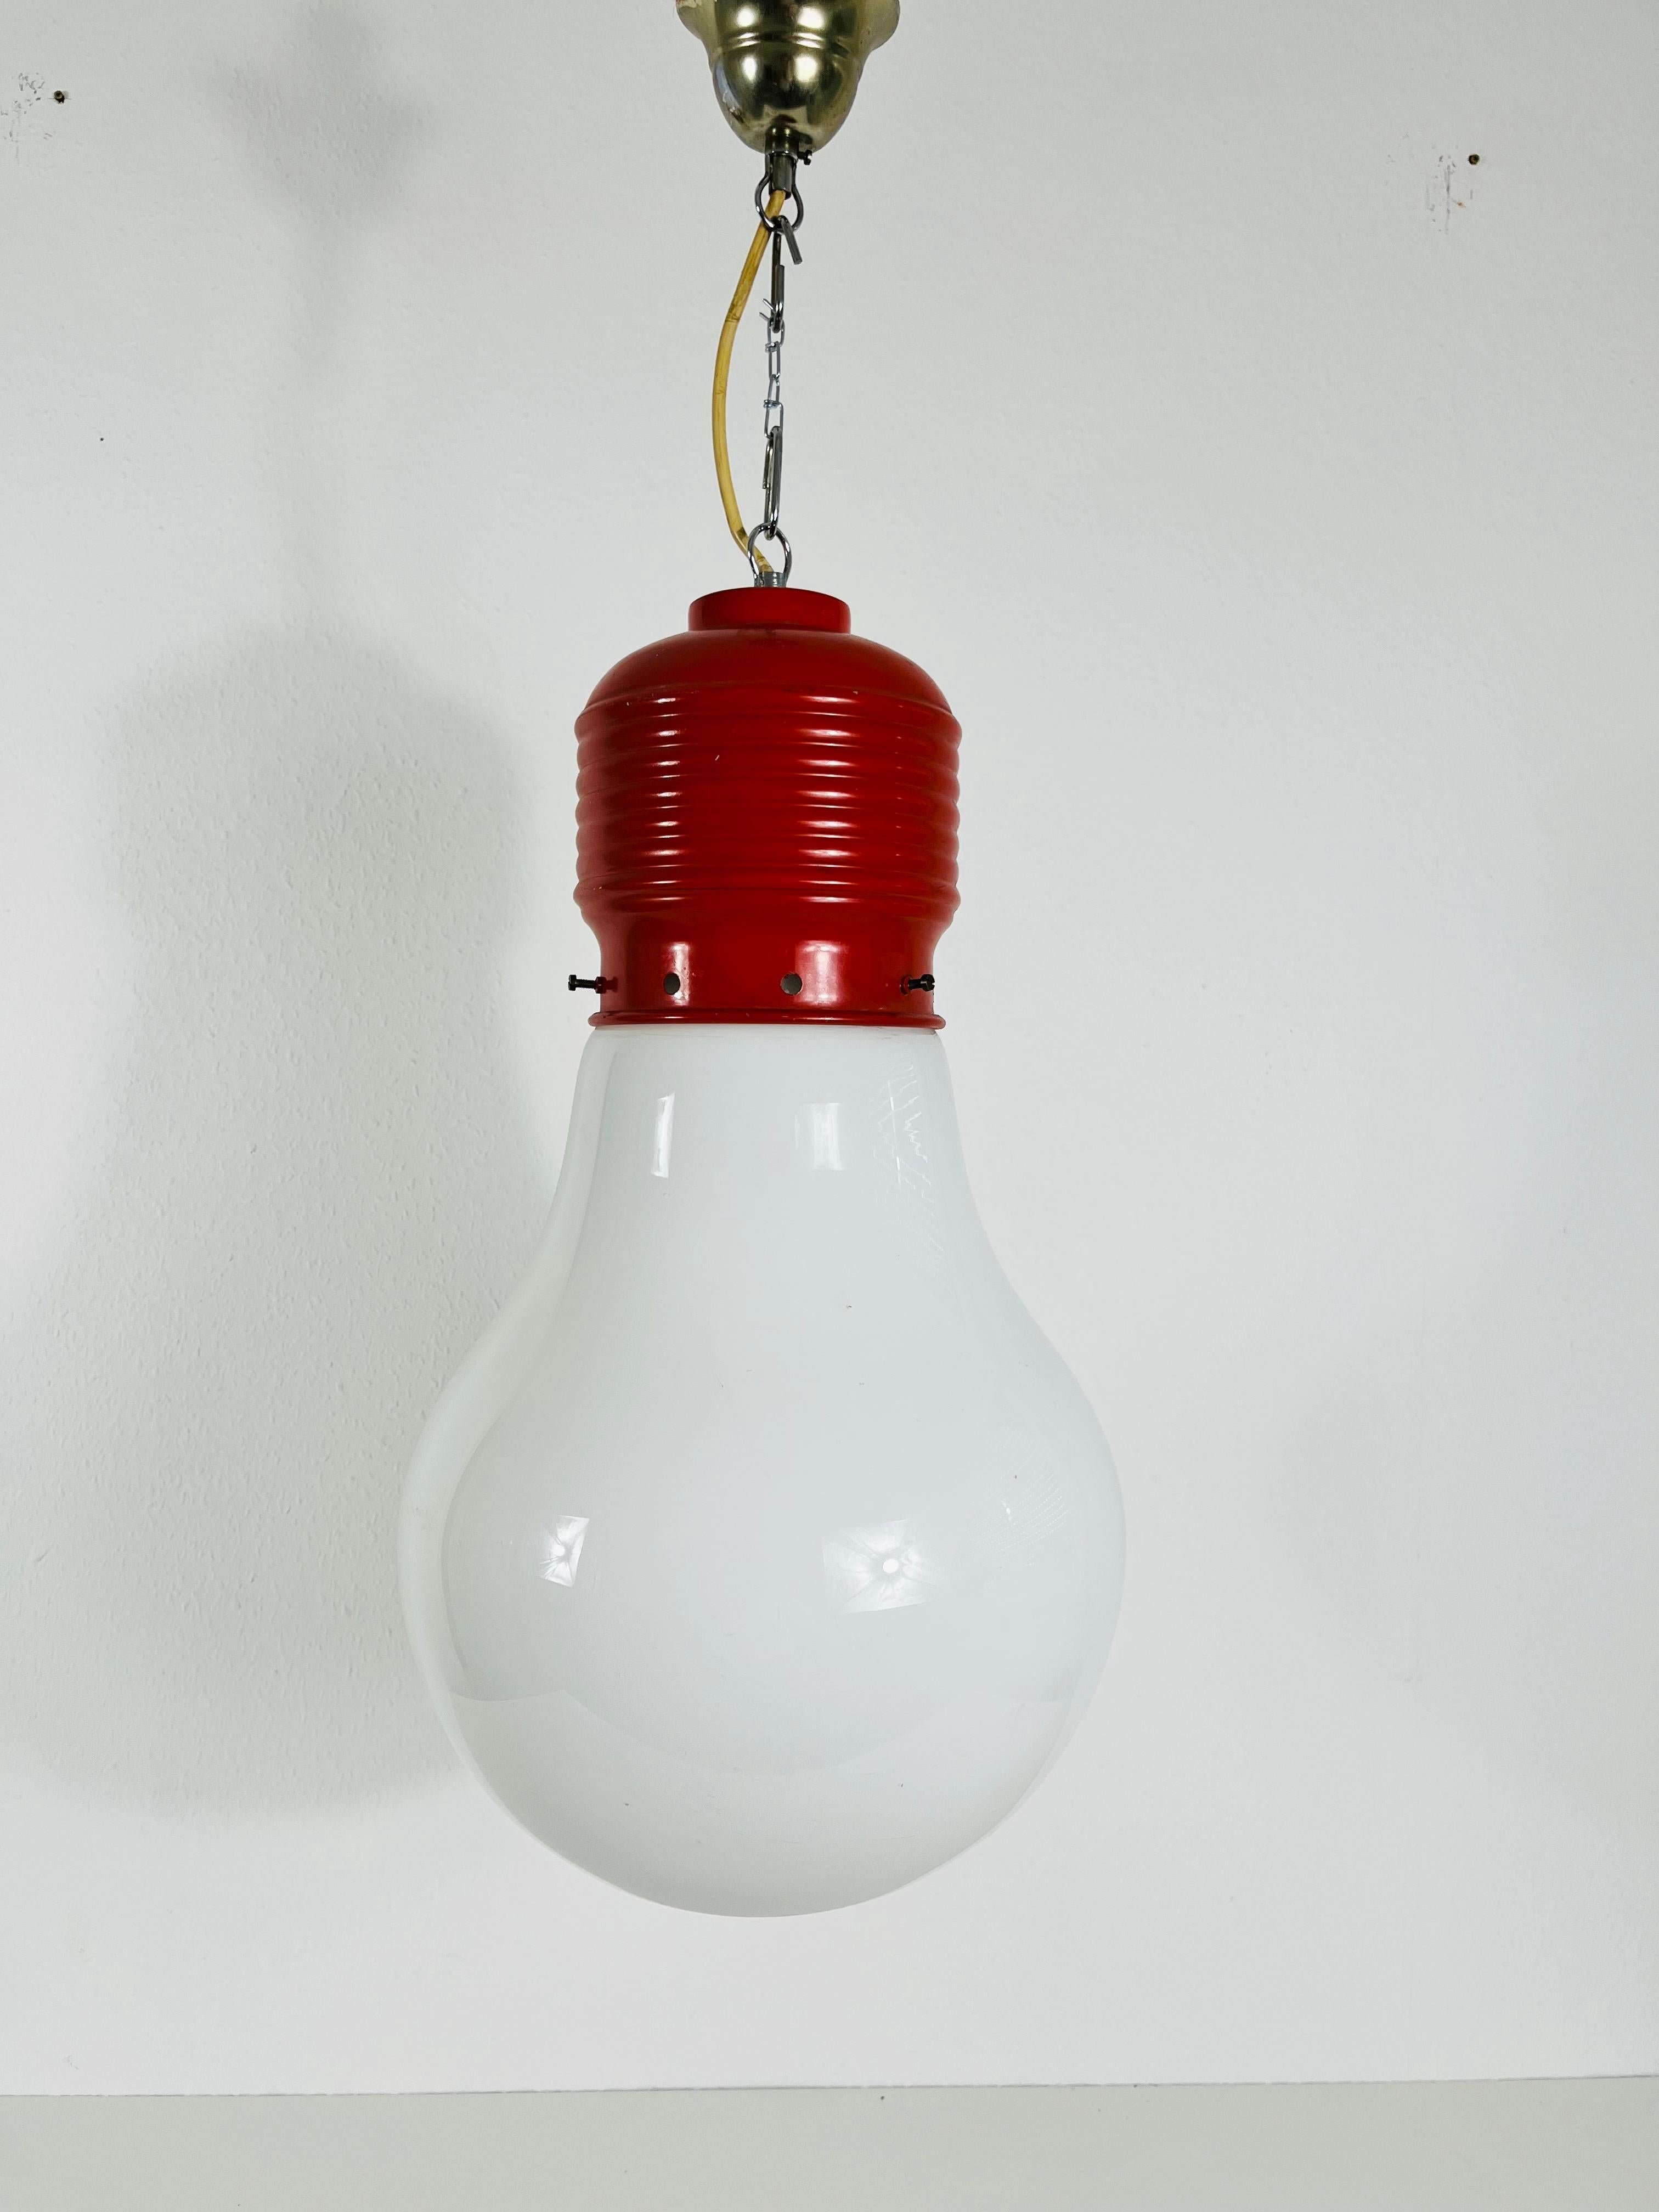 Seltene rote Pendelleuchte, entworfen von dem deutschen Designer Ingo Maurer in den 1960er Jahren. Die Leuchte hat eine einzigartige Glühbirnenform, die charakteristisch für Ingo Maurer ist.

Die Leuchte benötigt eine E27-Glühbirne. Funktioniert